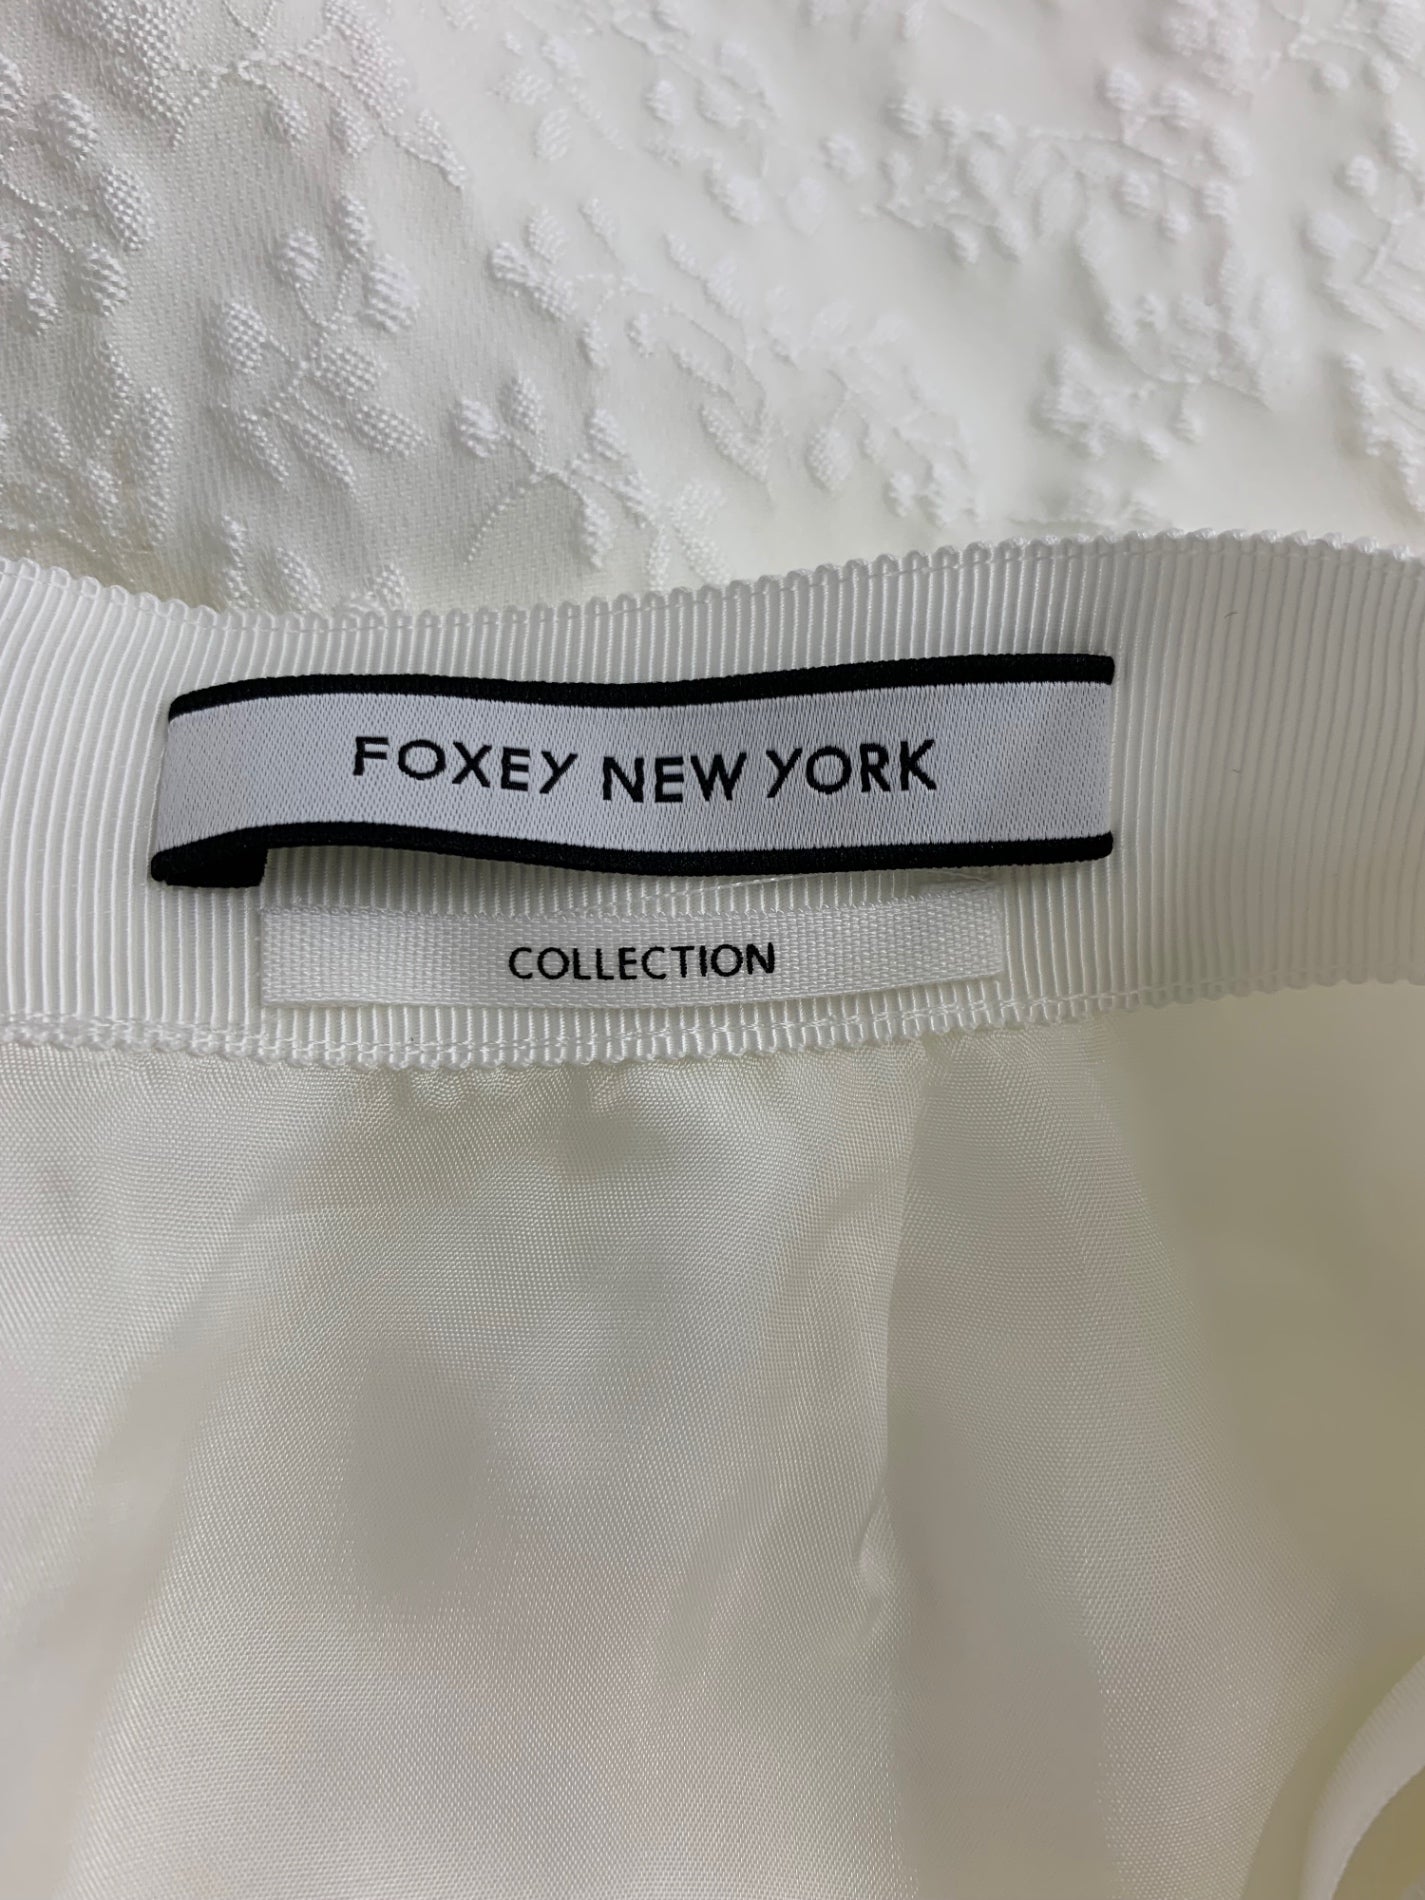 フォクシーニューヨーク collection Skirt Peony 40965 スカート 38 ホワイト | 中古ブランド品・古着通販ビープライス